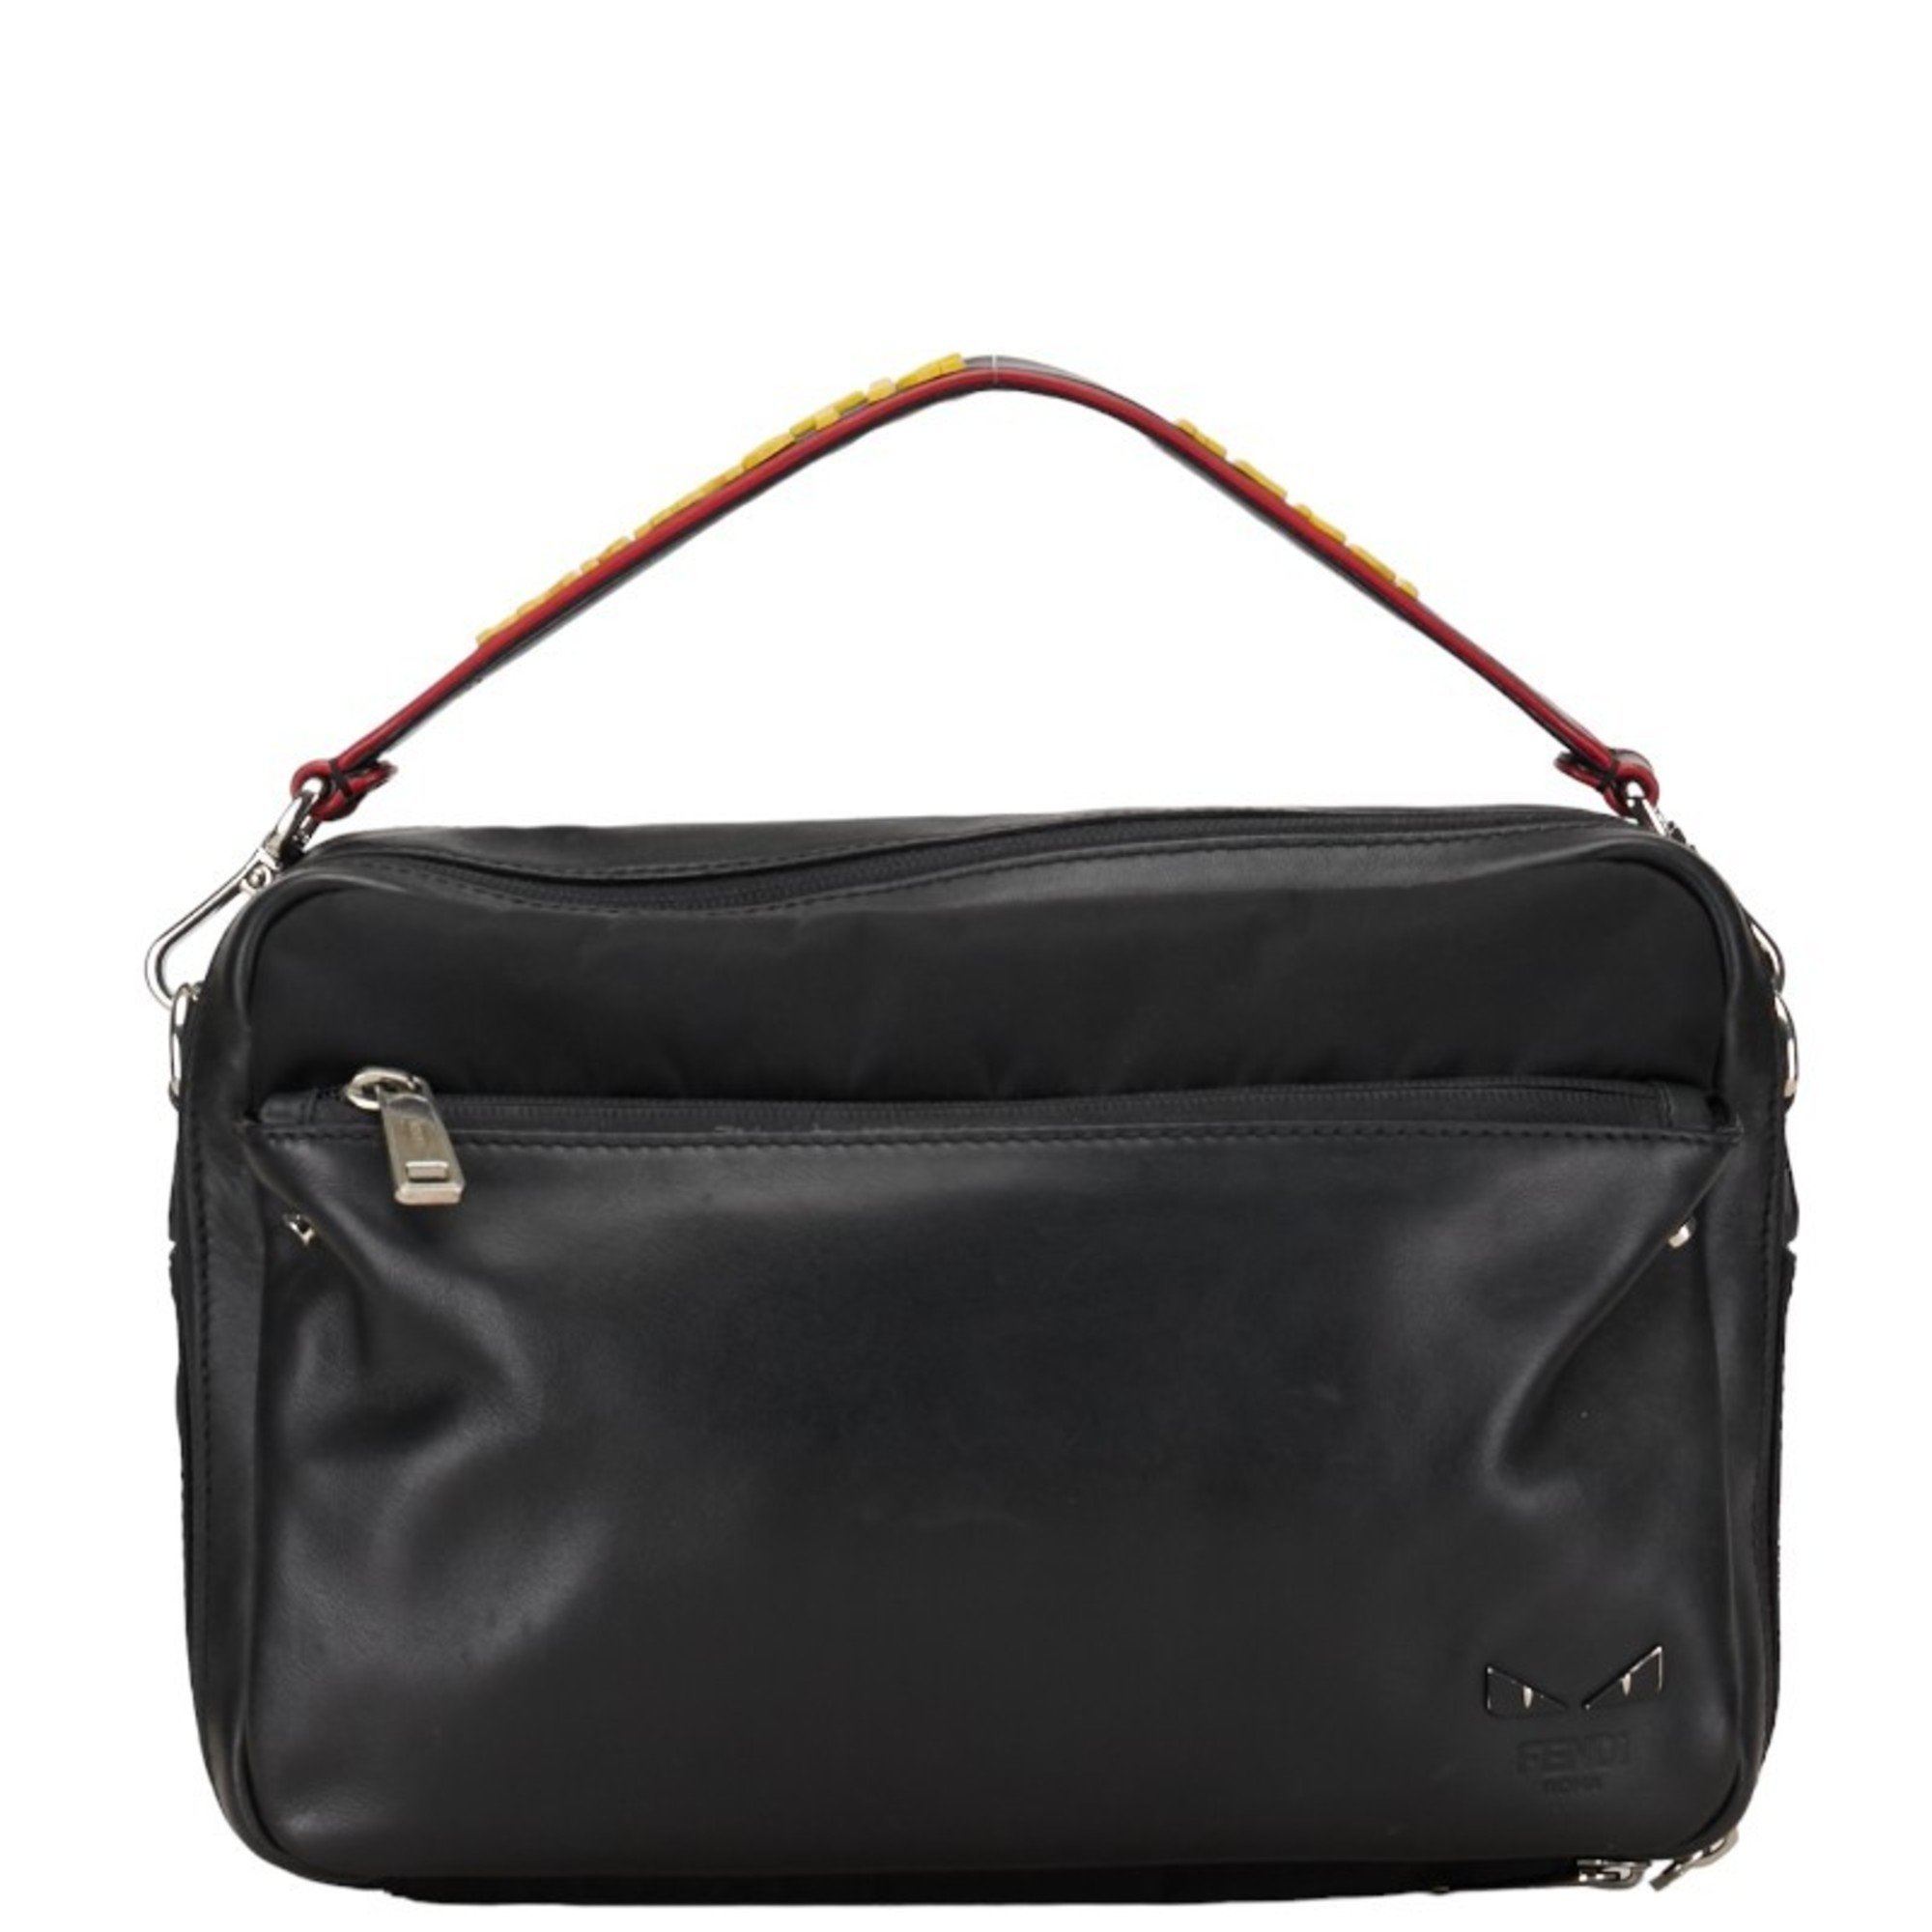 Fendi Monster Eye FANTASTIC FENDI Handbag Shoulder Bag 7V11 Black Leather Nylon Women's